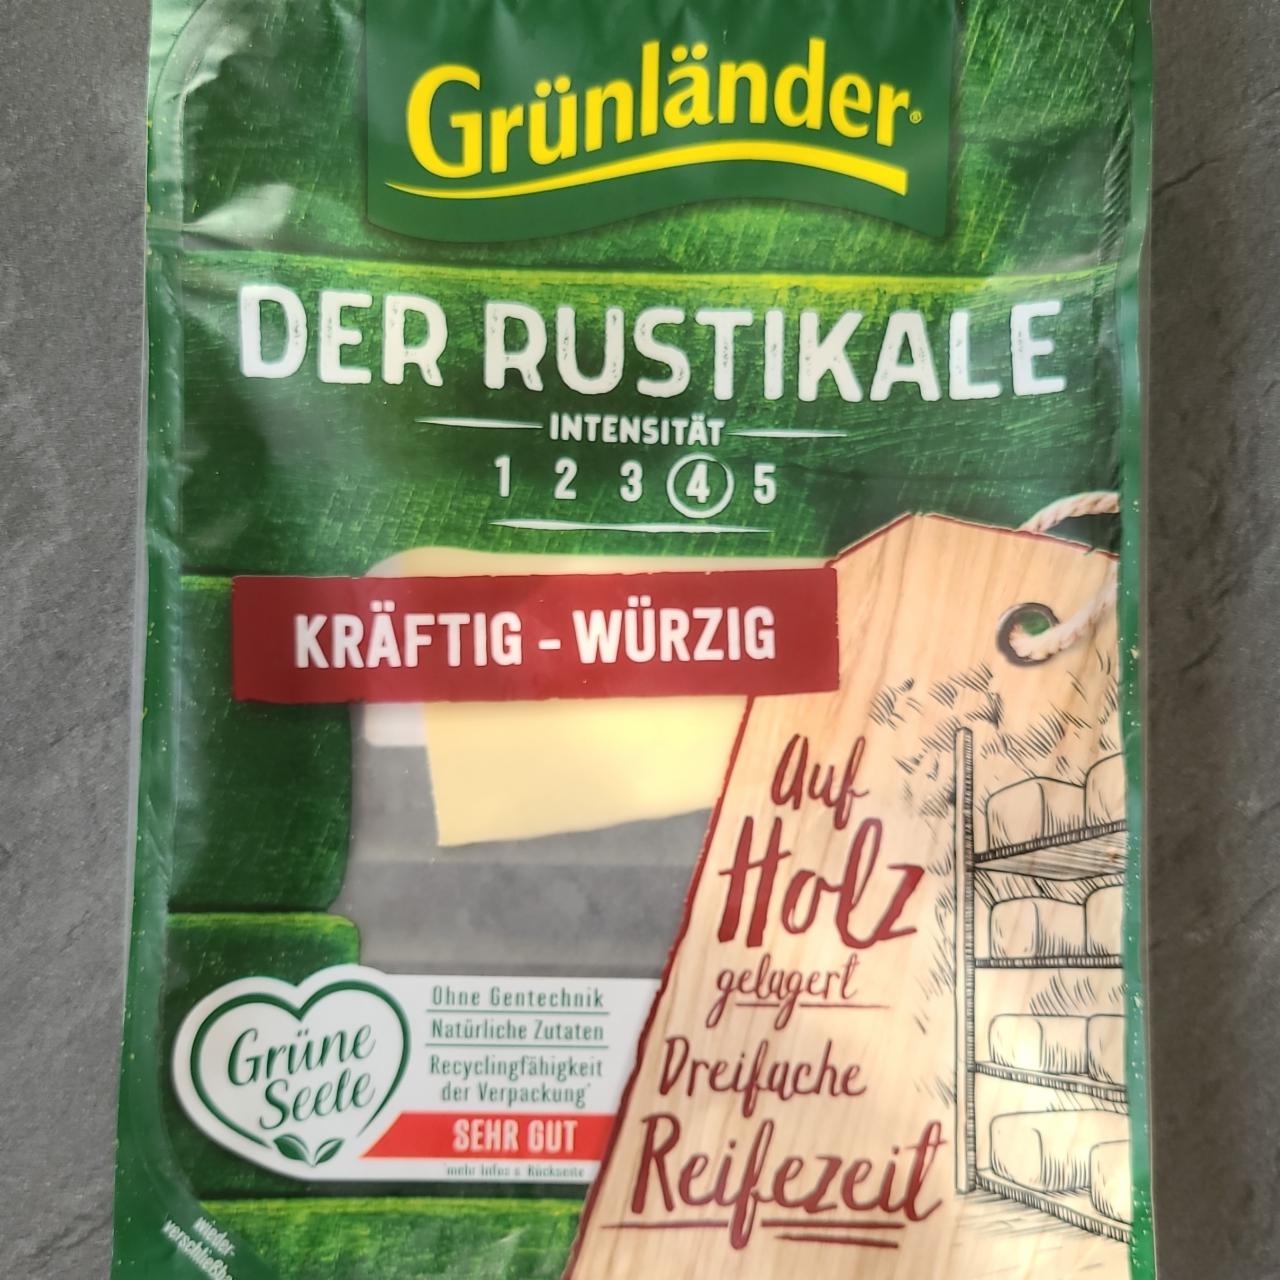 Fotografie - Der Rustikale Kräftig-Würzig Grünländer